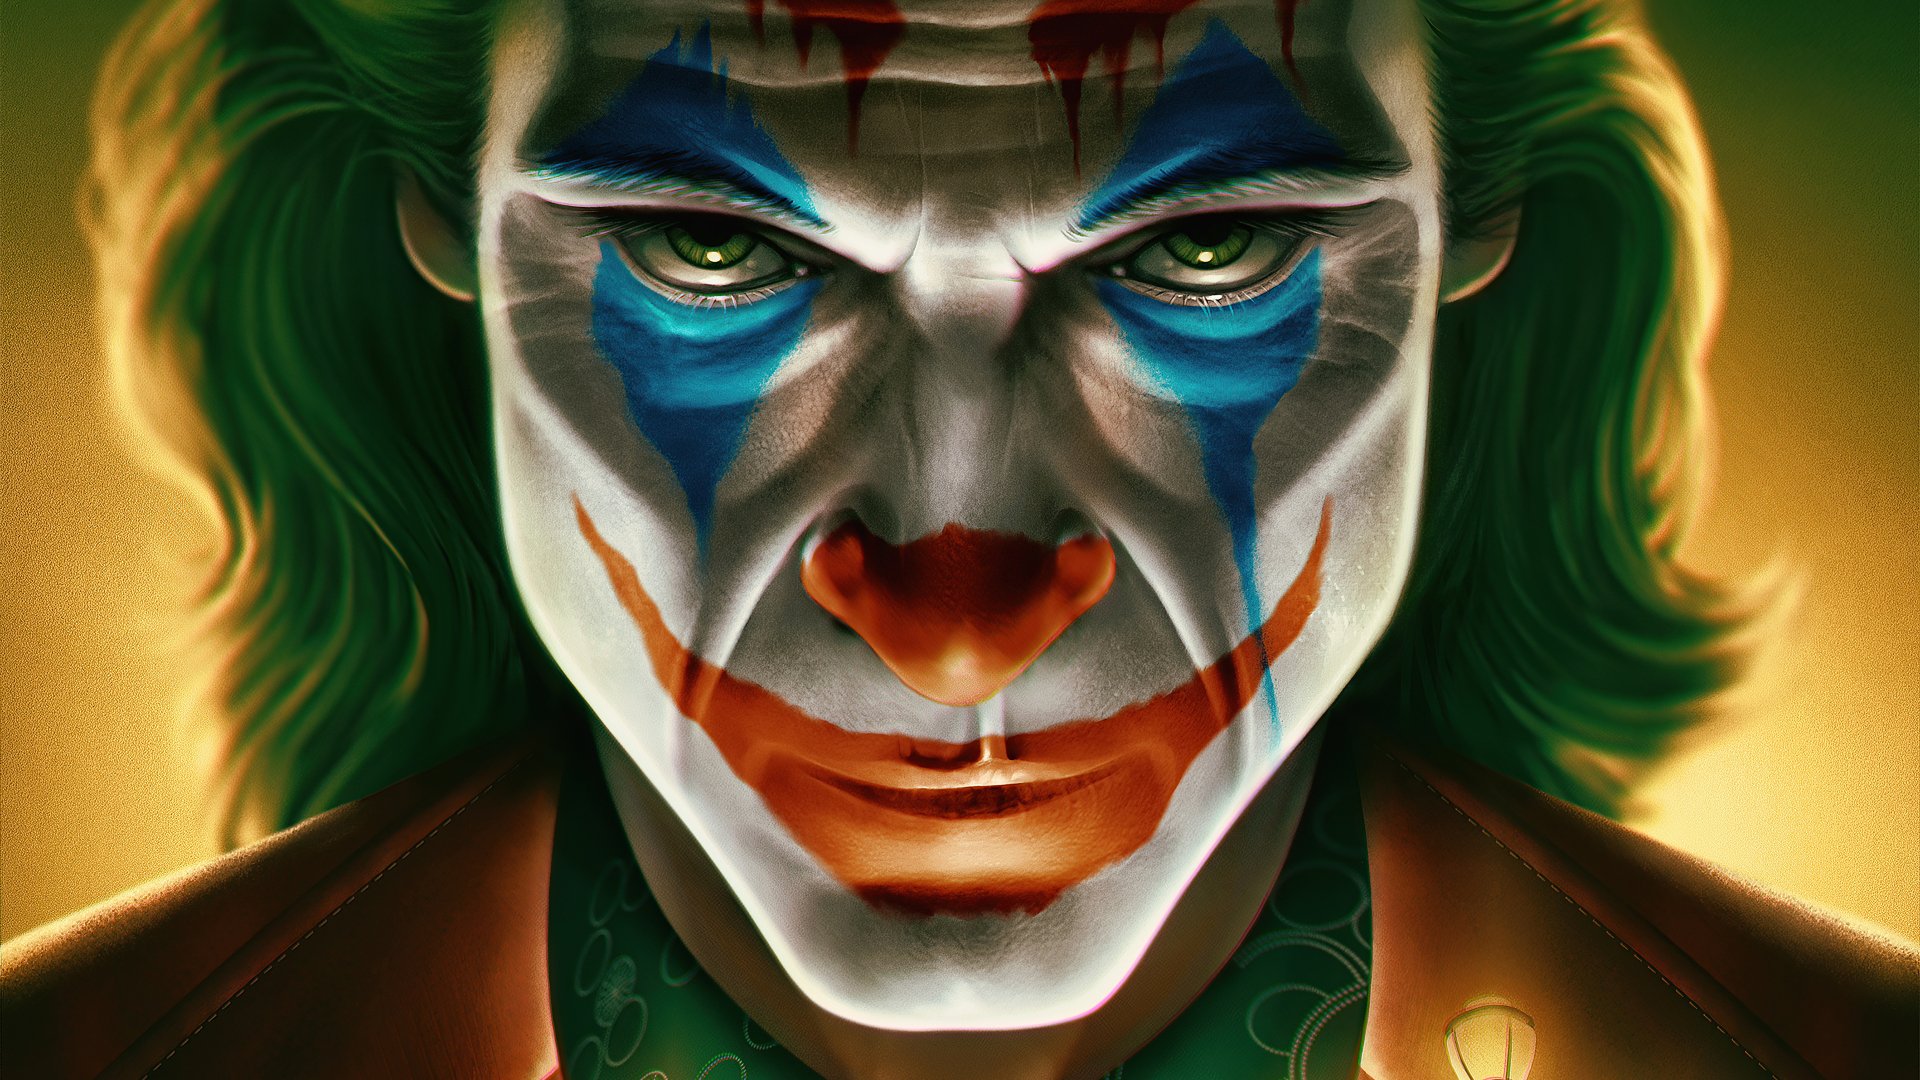 Joker 4k Ultra HD Wallpaper | Background Image | 3840x2160 | ID:1097989